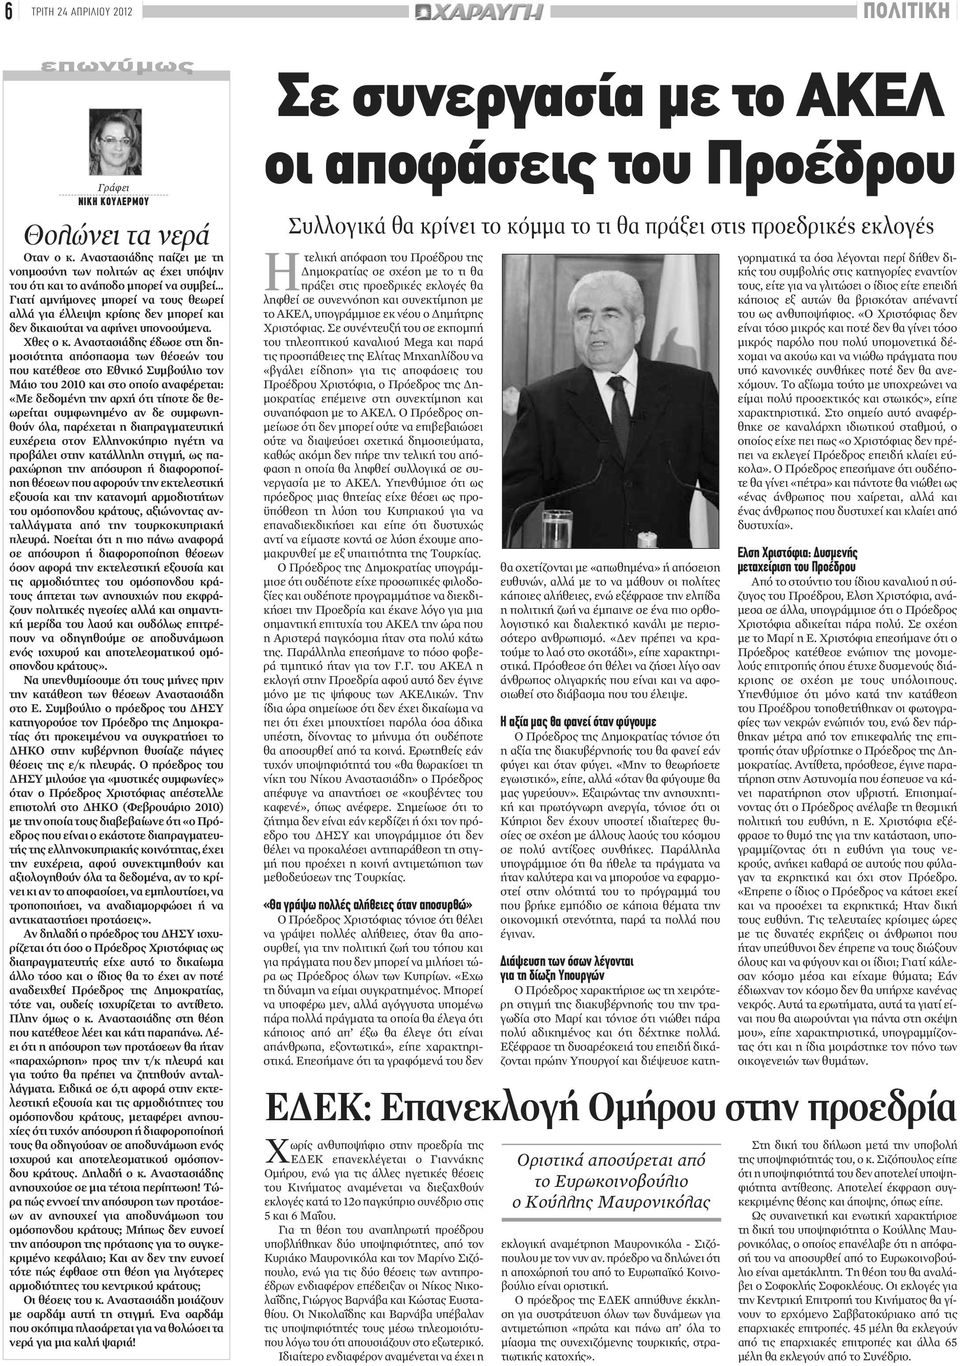 Αναστασιάδης έδωσε στη δημοσιότητα απόσπασμα των θέσεών του που κατέθεσε στο Εθνικό Συμβούλιο τον Μάιο του 2010 και στο οποίο αναφέρεται: «Με δεδομένη την αρχή ότι τίποτε δε θεωρείται συμφωνημένο αν